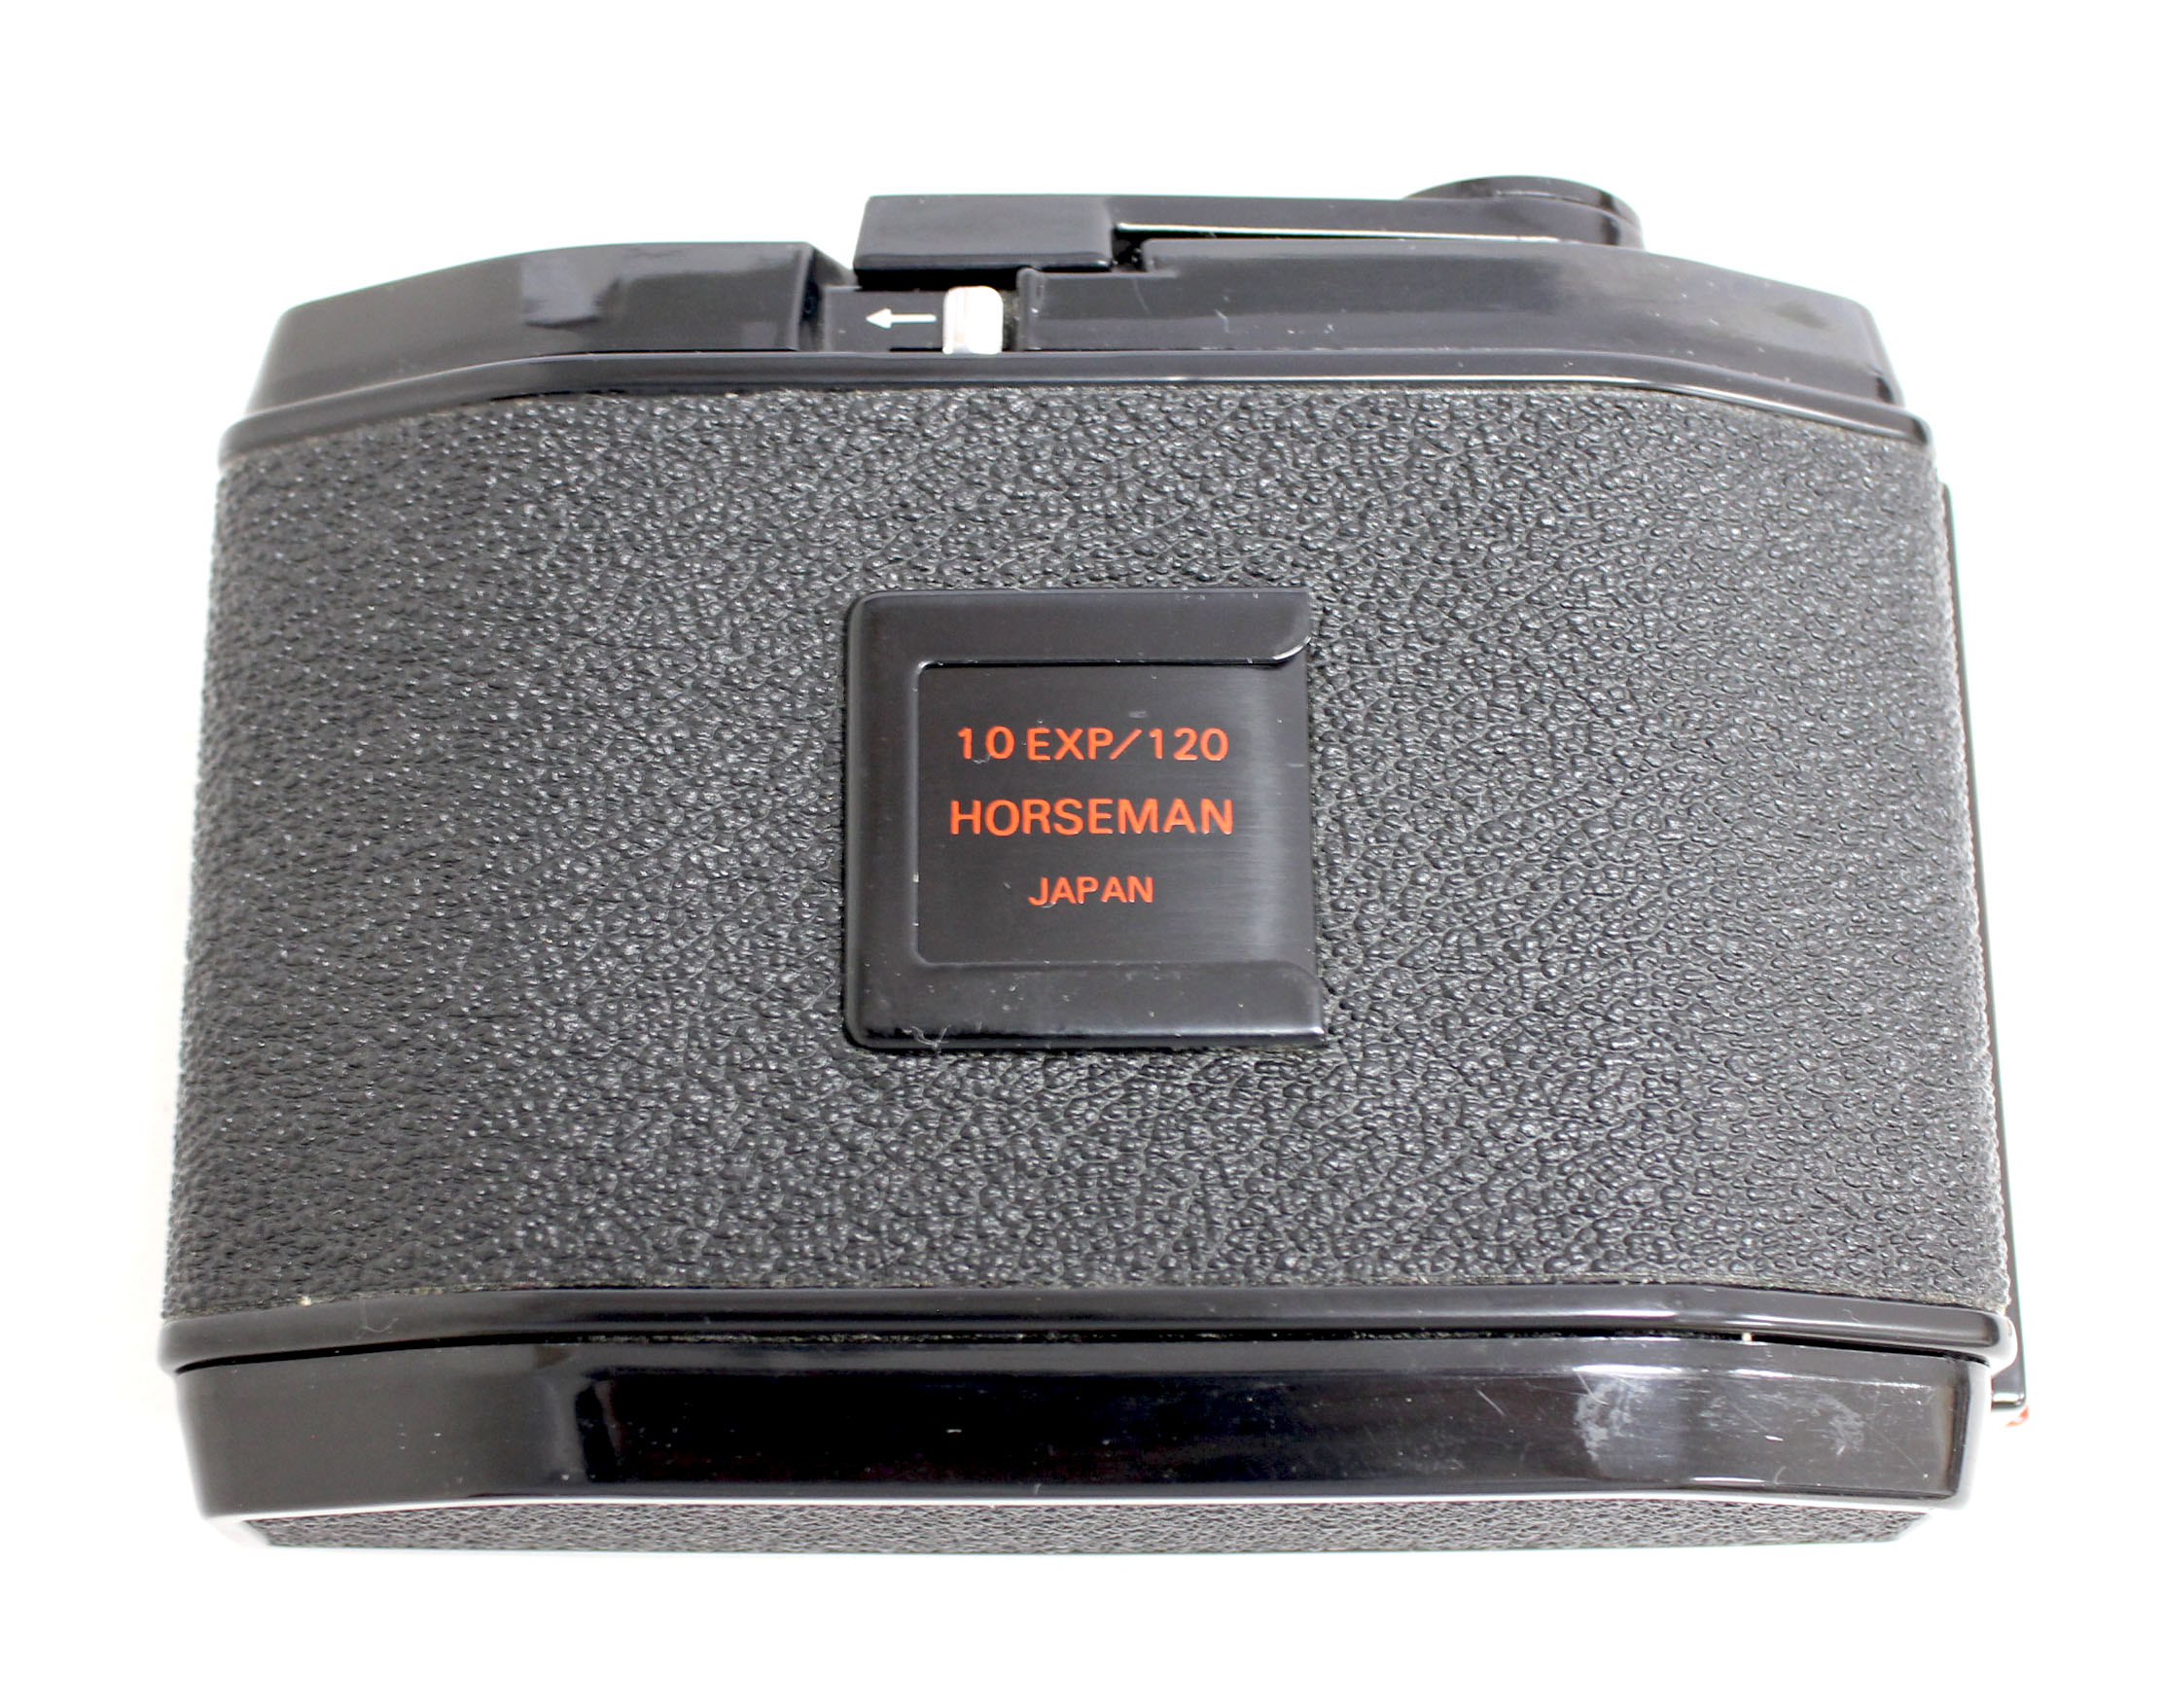 Horseman 10EXP/120 6x7 Roll Film Back Holder for VH, VH-R, 985, 980, 970 from Japan